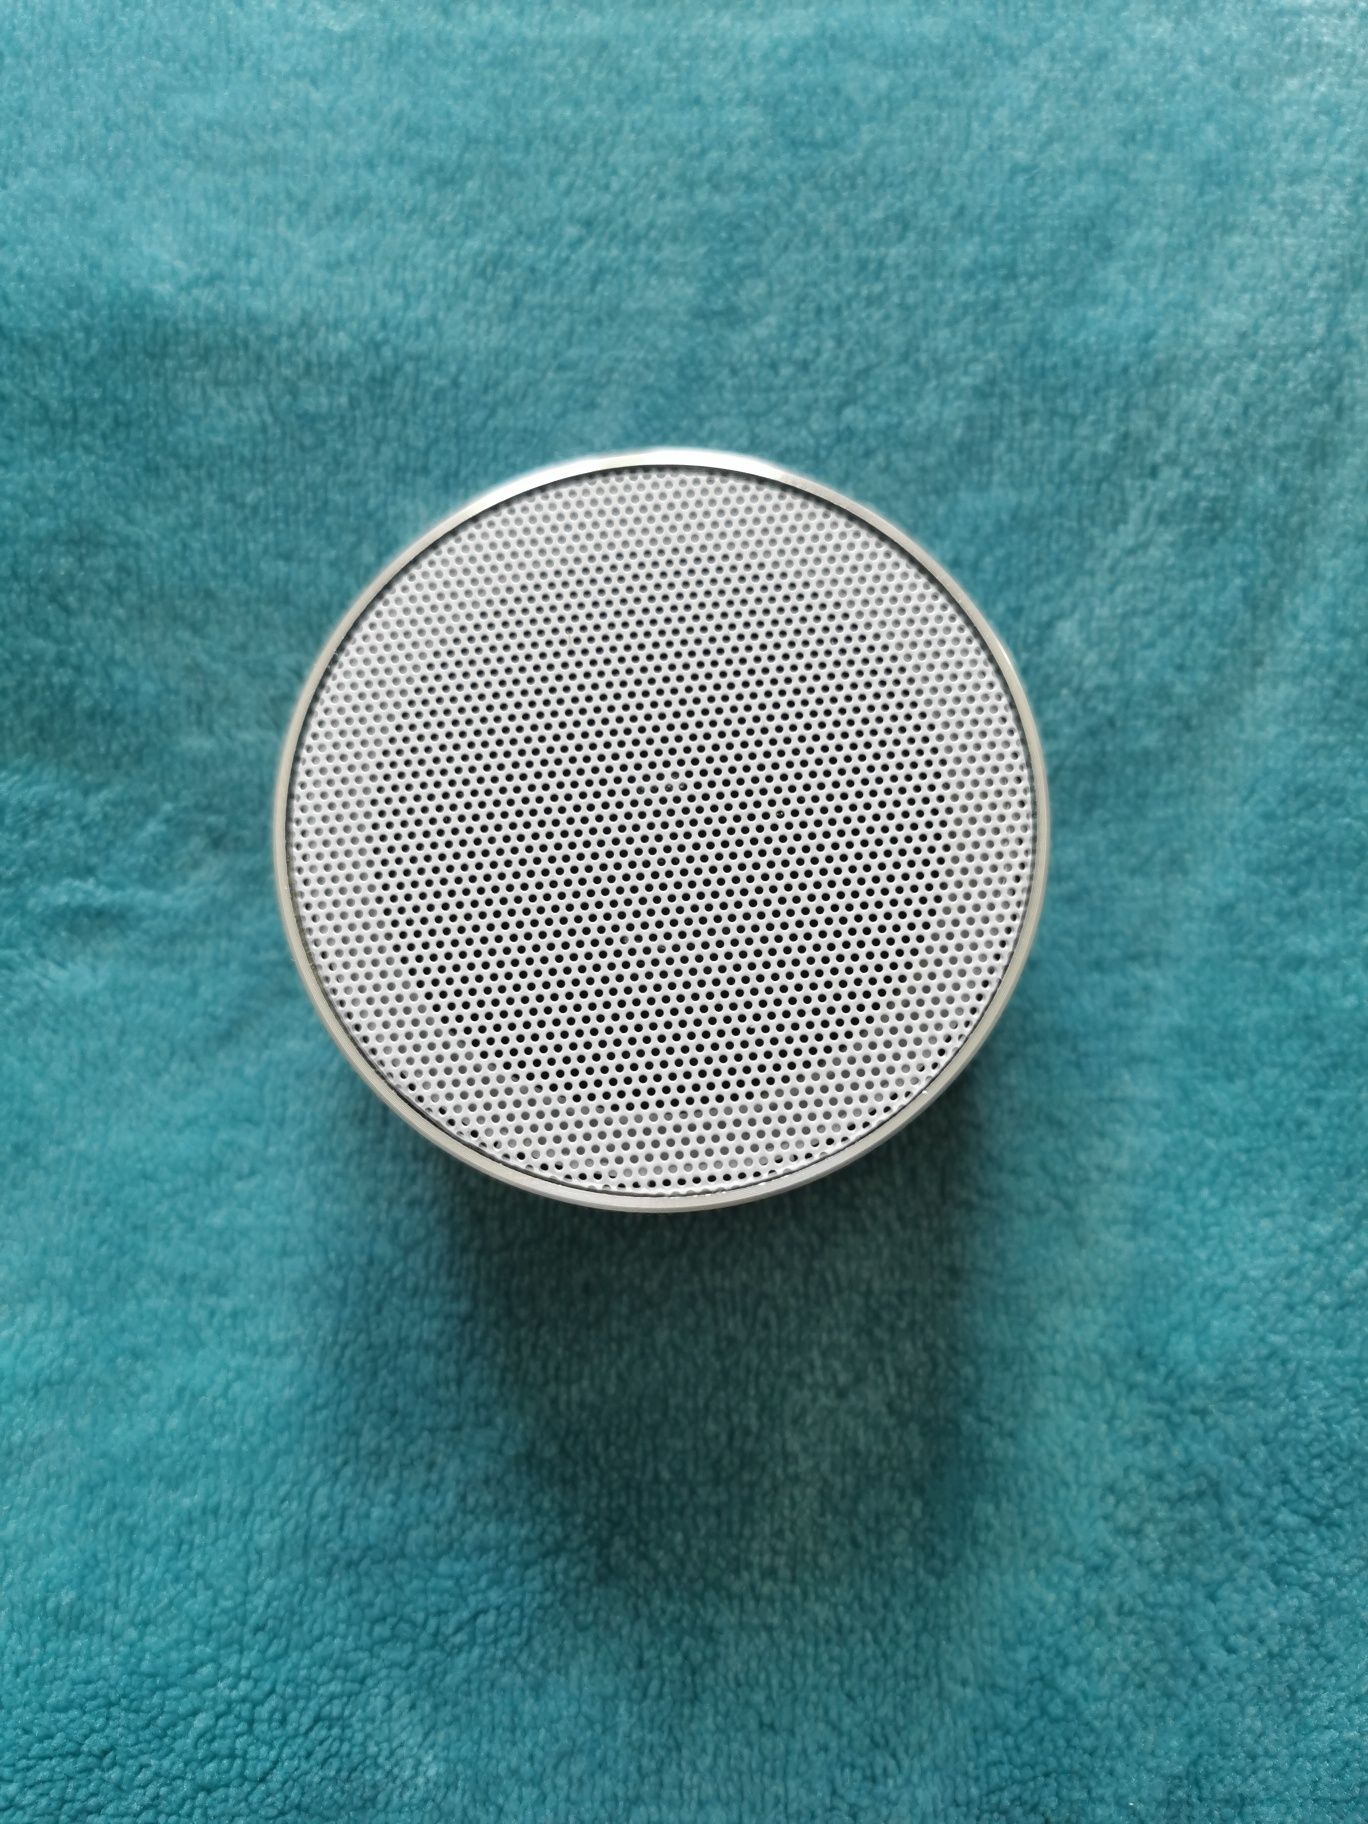 Bezprzewodowy głośnik przenośny srebrny 400mAh mały